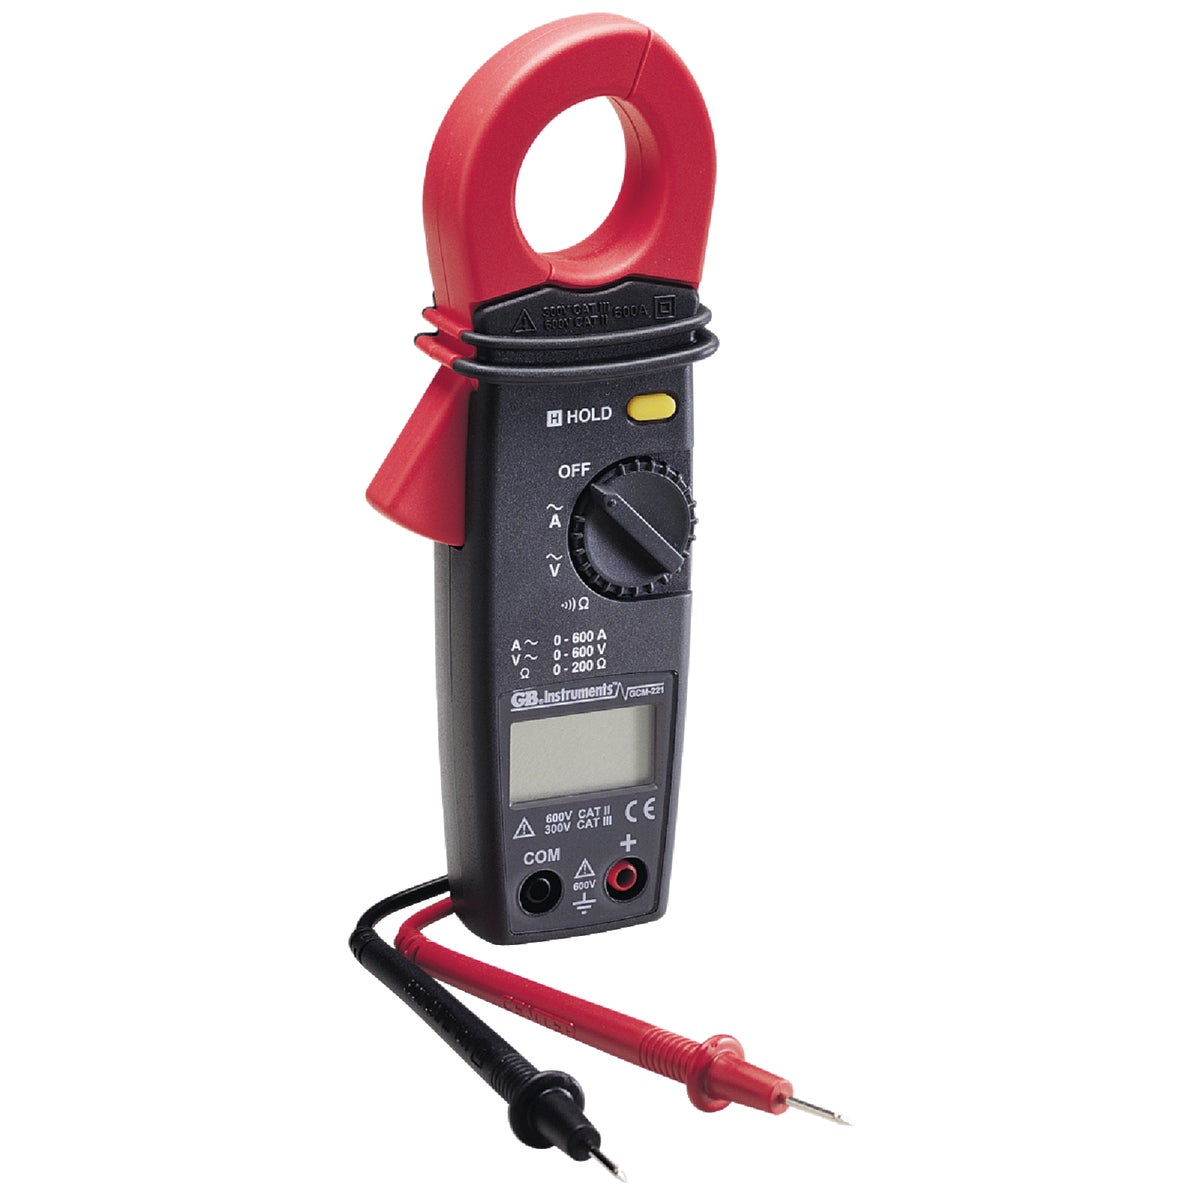 Item 529389, Voltage range: AC voltage 600V; Current range: AC current 600A; Functions: 